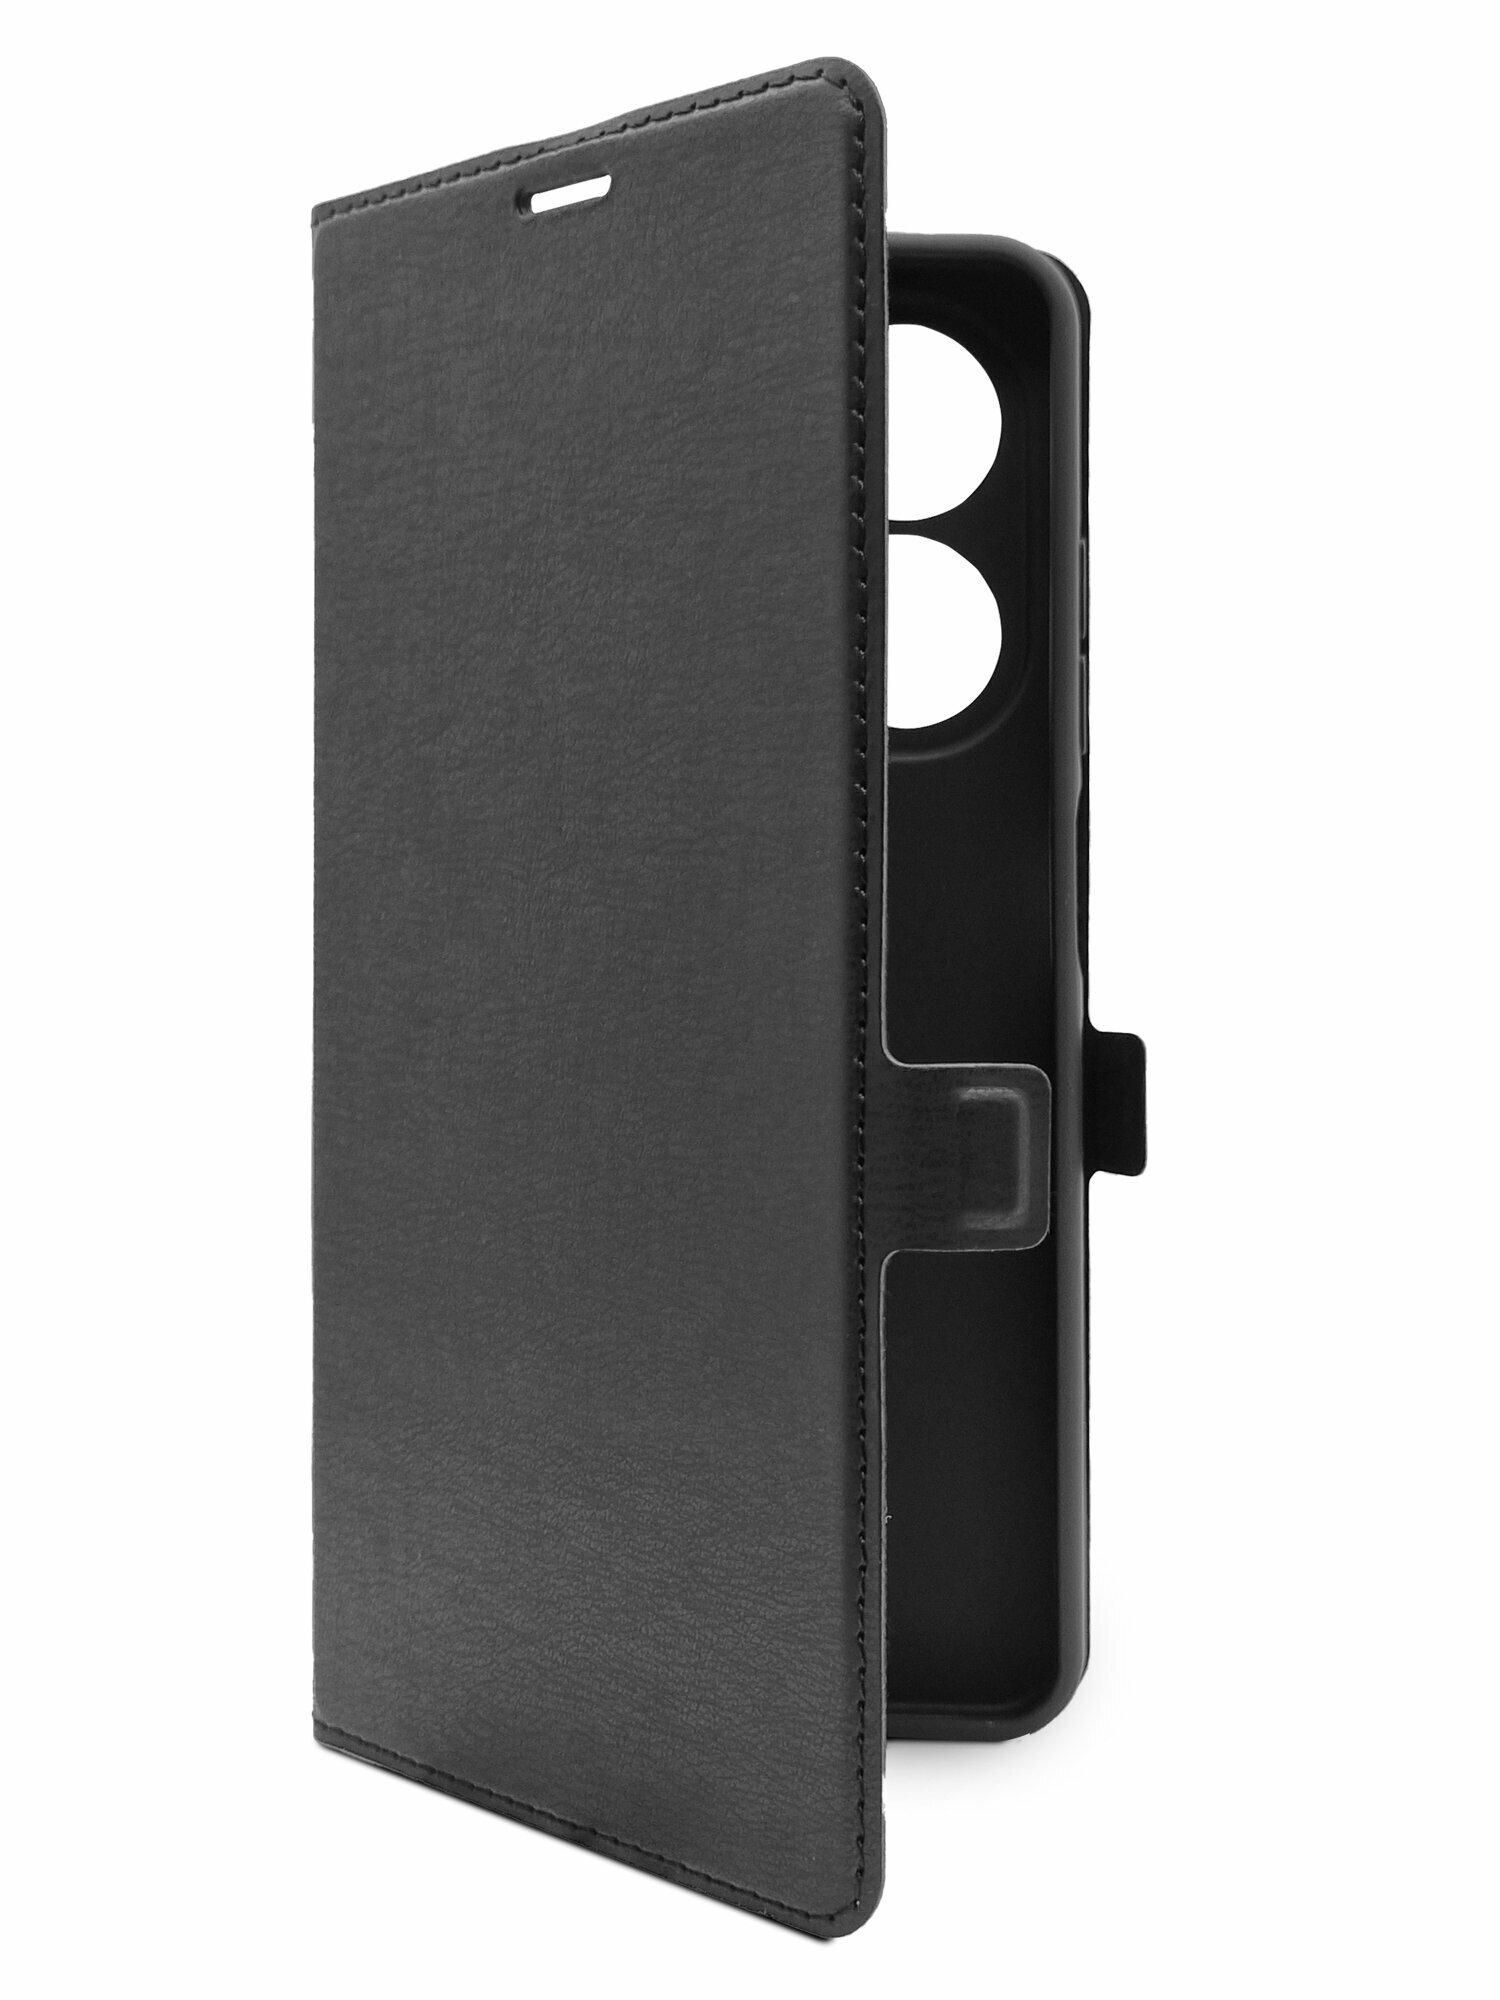 Чехол на Tecno Spark Go 2024 (Техно Спарк Гоу 2024) черный книжка эко-кожа с функцией подставки отделением для карт и магнитами Book case, Brozo